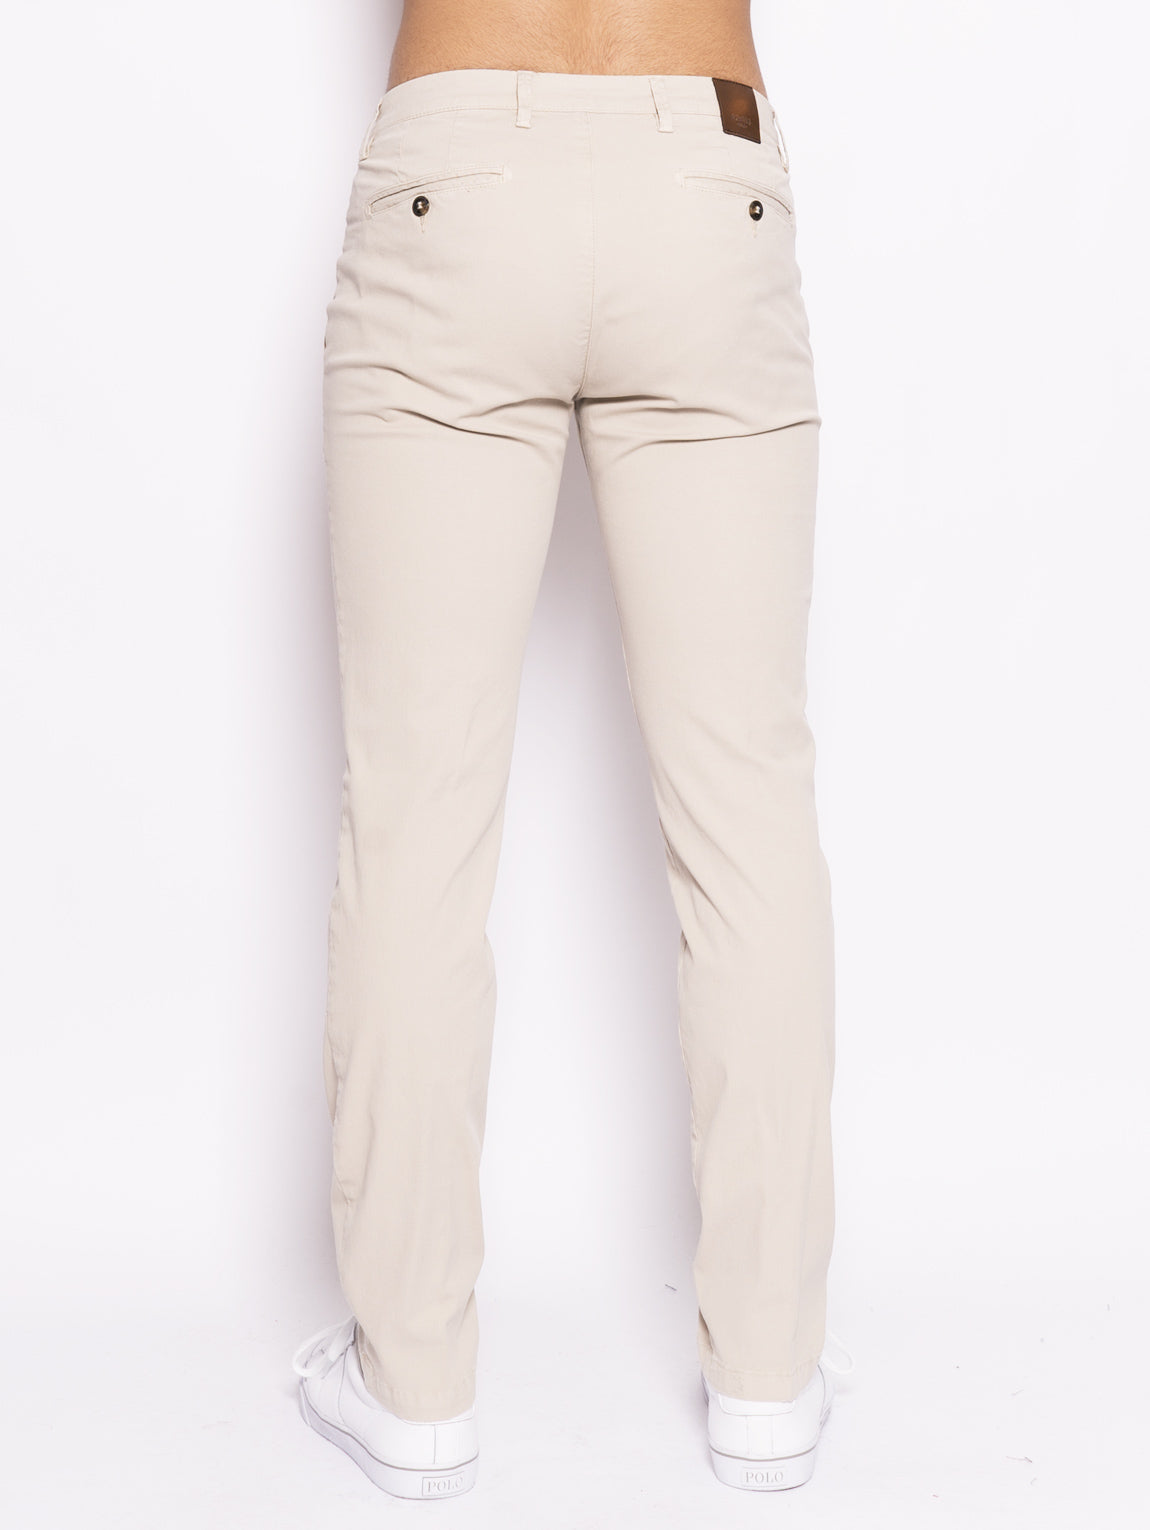 Pantalone chinos - BG05 Beige-Pantaloni-Briglia 1949-TRYME Shop